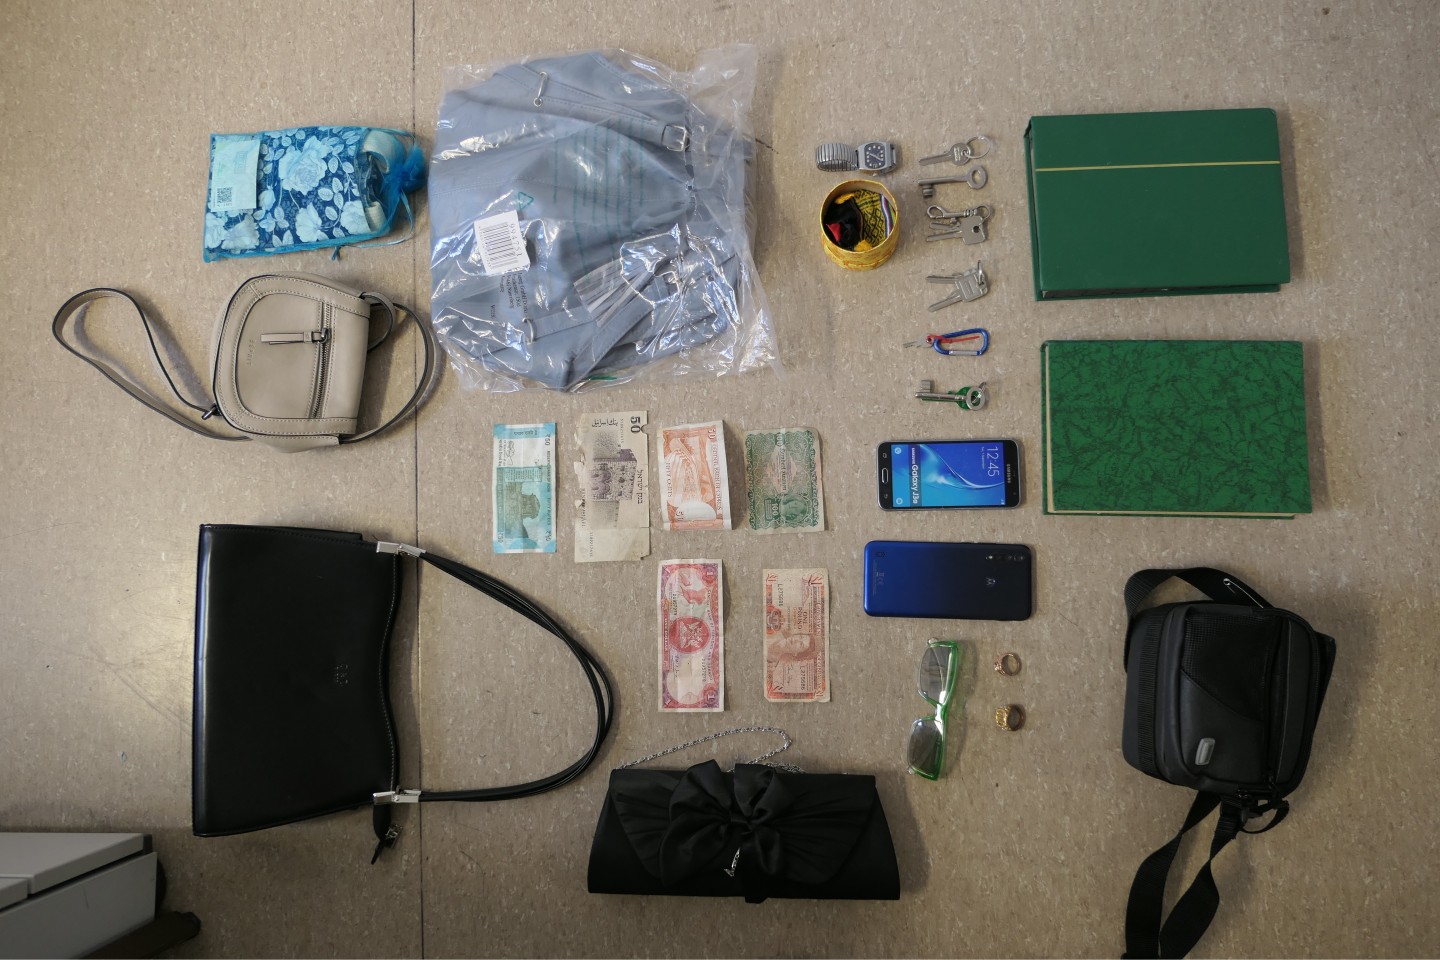 Diese mutmaßlichen Beutestücke konnte die Polizei nicht zuordnen: Zwei grüne Briefmarkenalben, mehrere Handtaschen und Schlüssel, eine Armbanduhr, zwei Handys und Geldscheine in verschiedenen Währunge